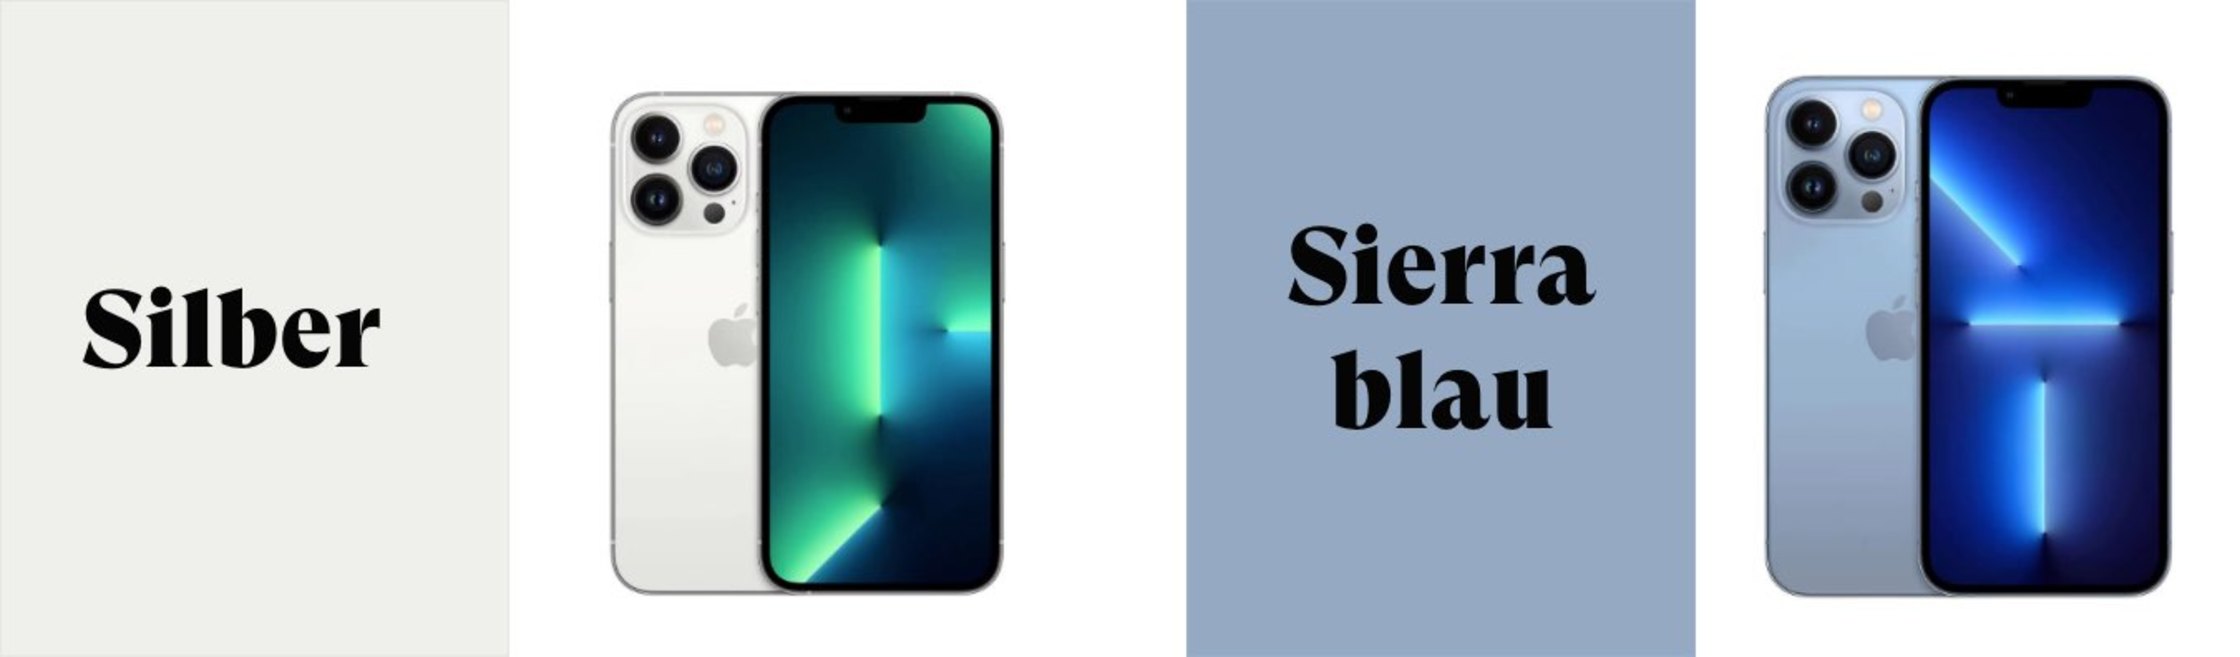 iphone 13 farben silber sierrablau